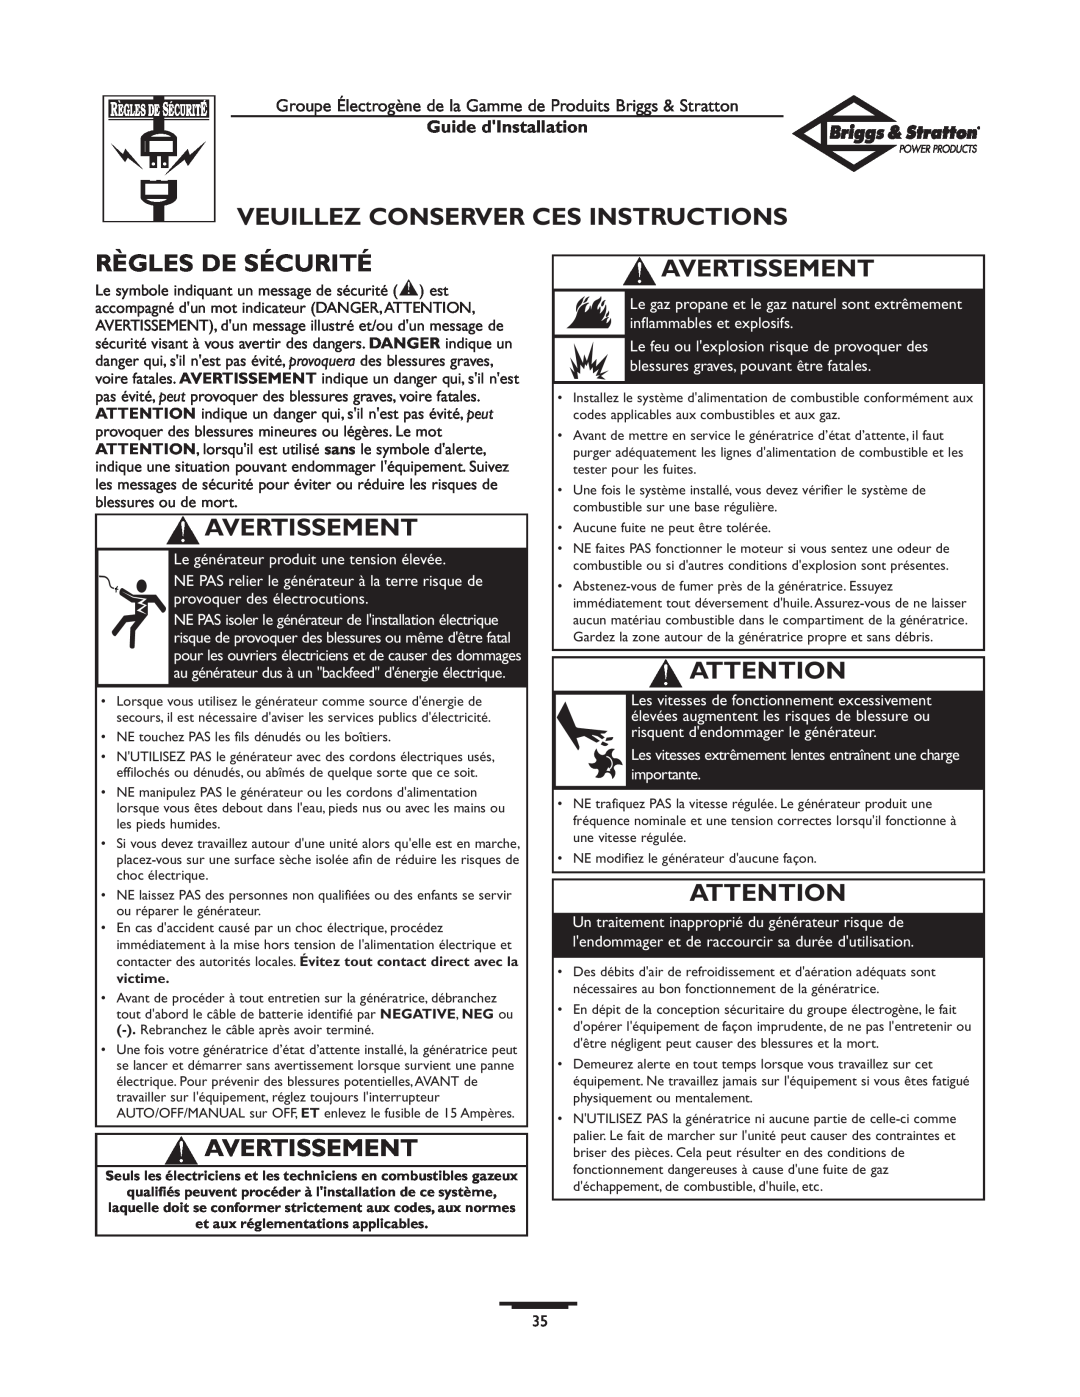 Briggs & Stratton 01938-0 Veuillez Conserver Ces Instructions, Règles De Sécurité, Avertissement, Guide dInstallation 